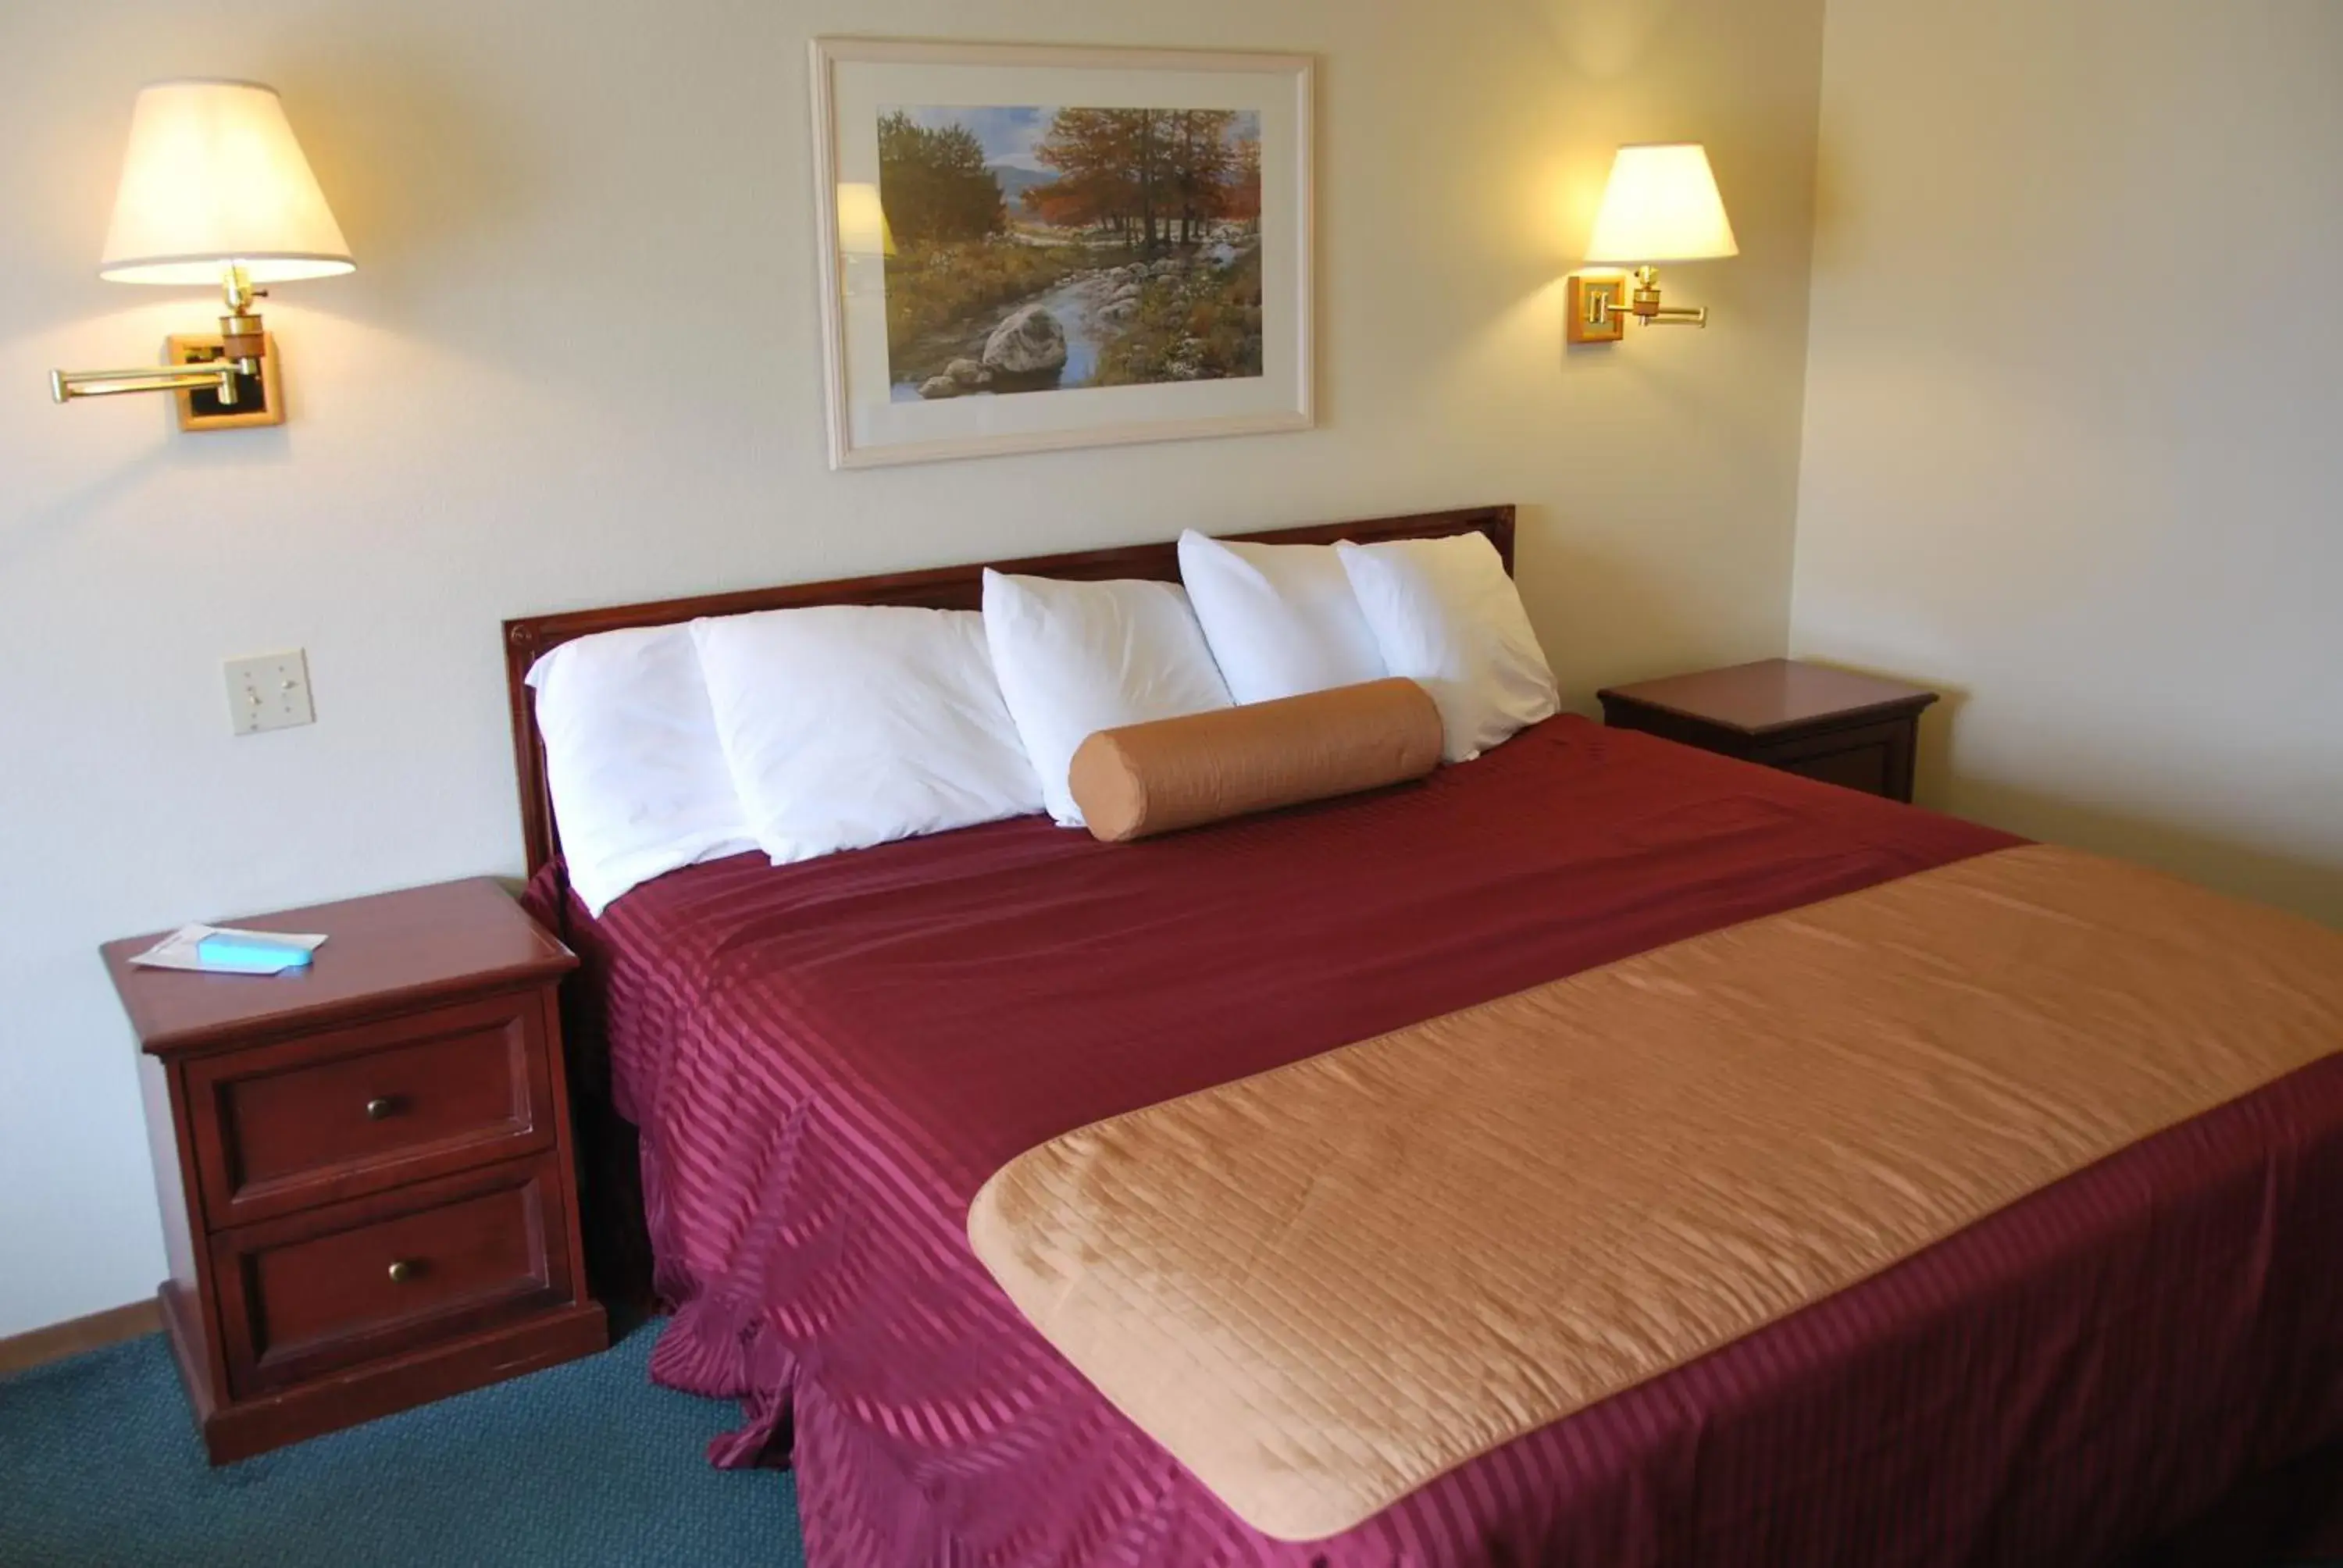 Bed in National 9 Inn Price